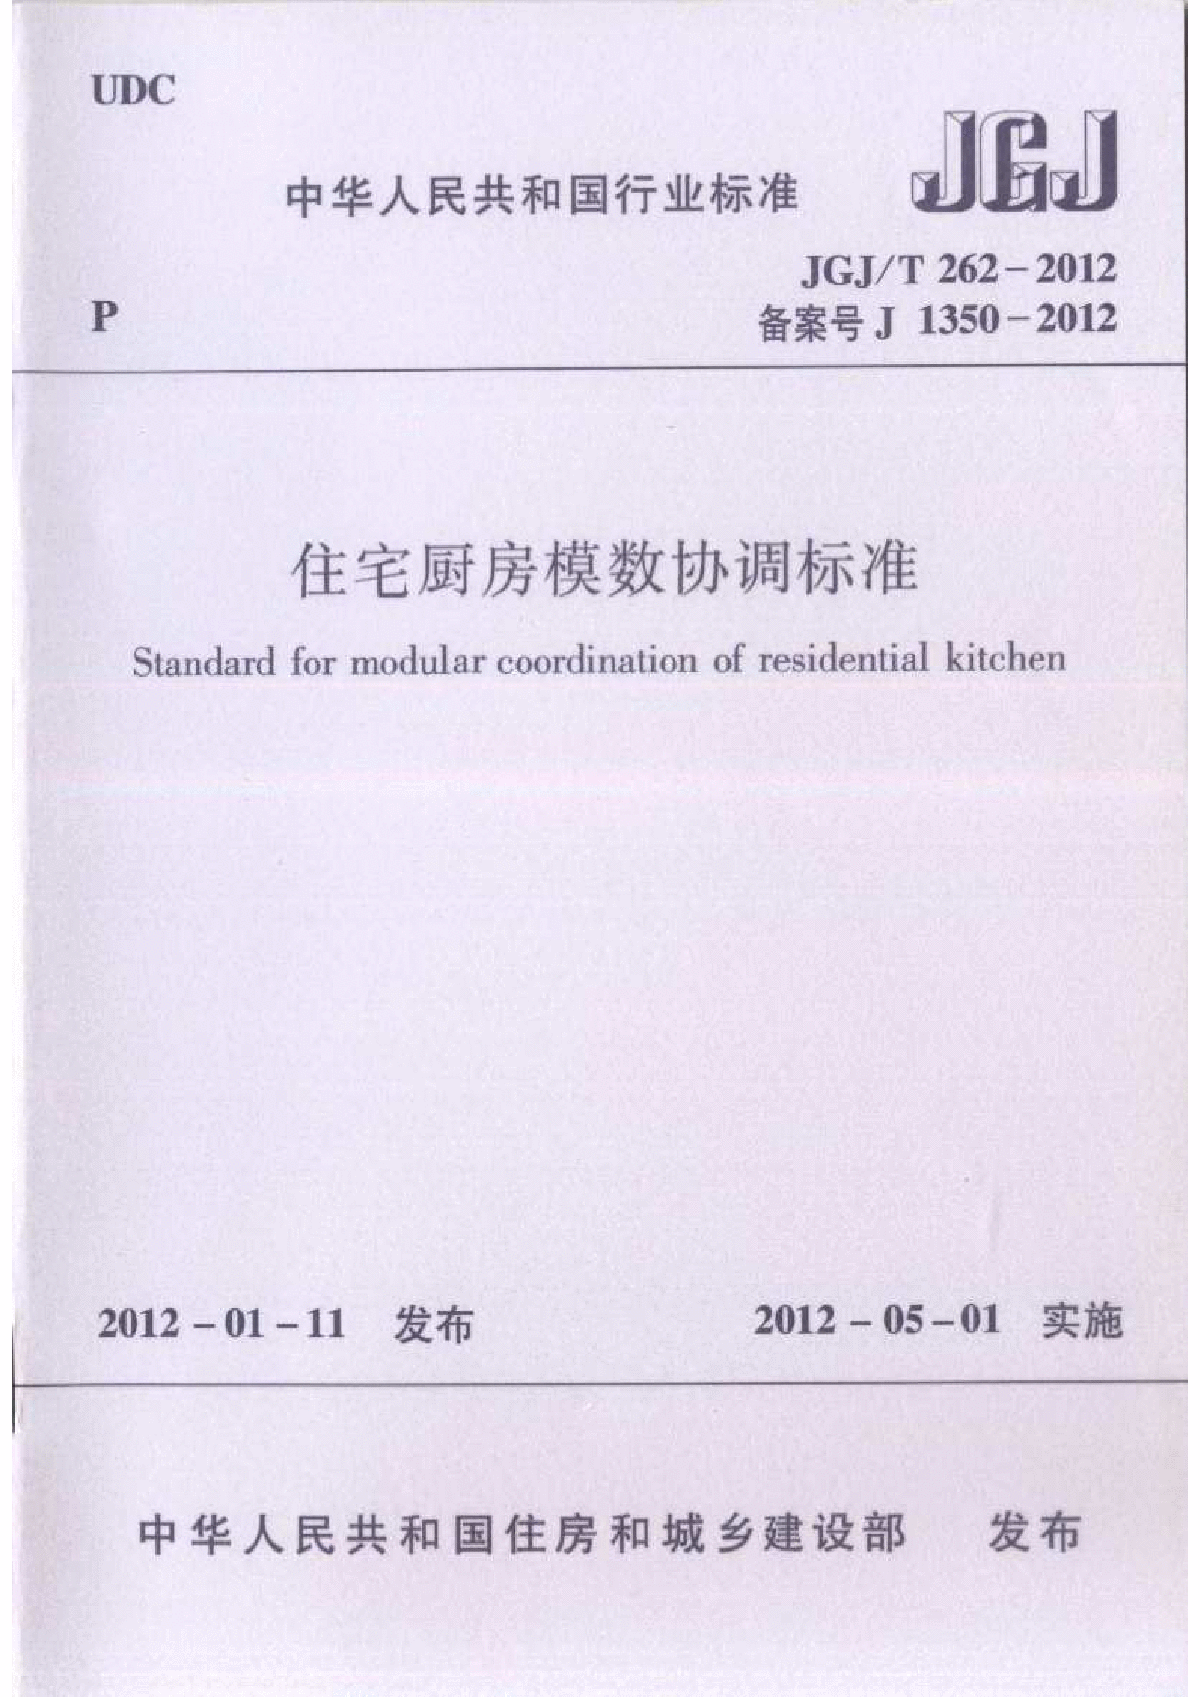 JGJT 262-2012 住宅厨房模数协调标准